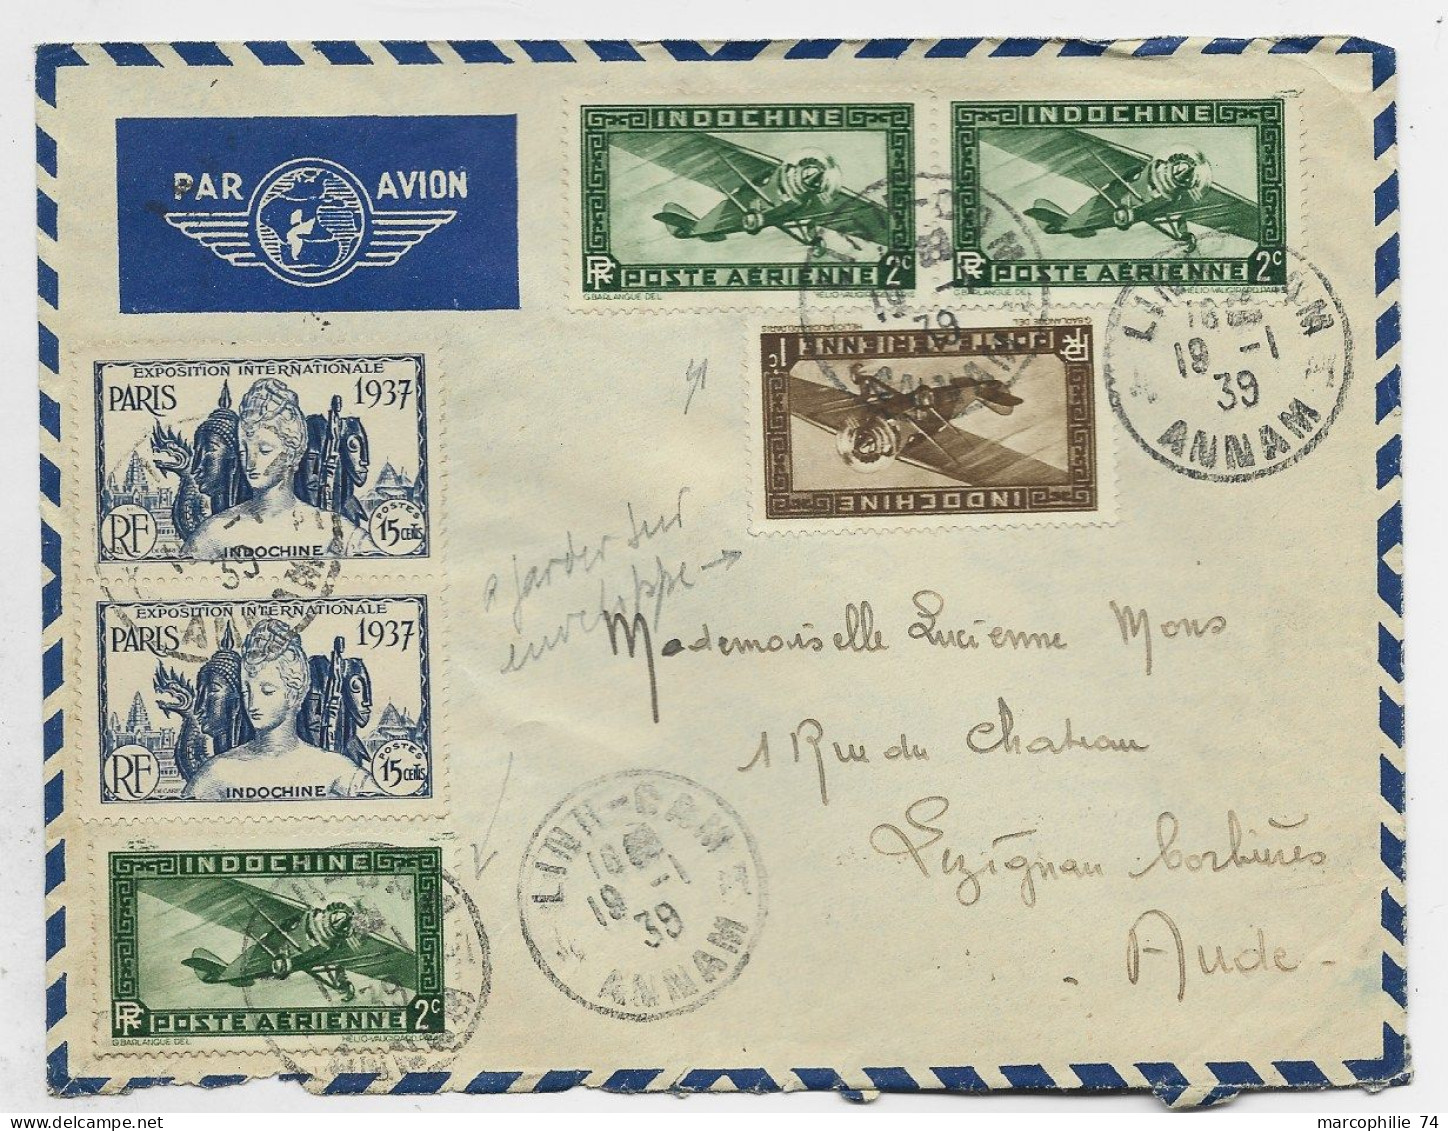 INDOCHINE PA 2CX3+1C+ 15CX2 EXPO PARIS 1937 LETTRE COVER AVION LINH DAM 19.1.1939 ANNAM POUR FRANCE - Briefe U. Dokumente